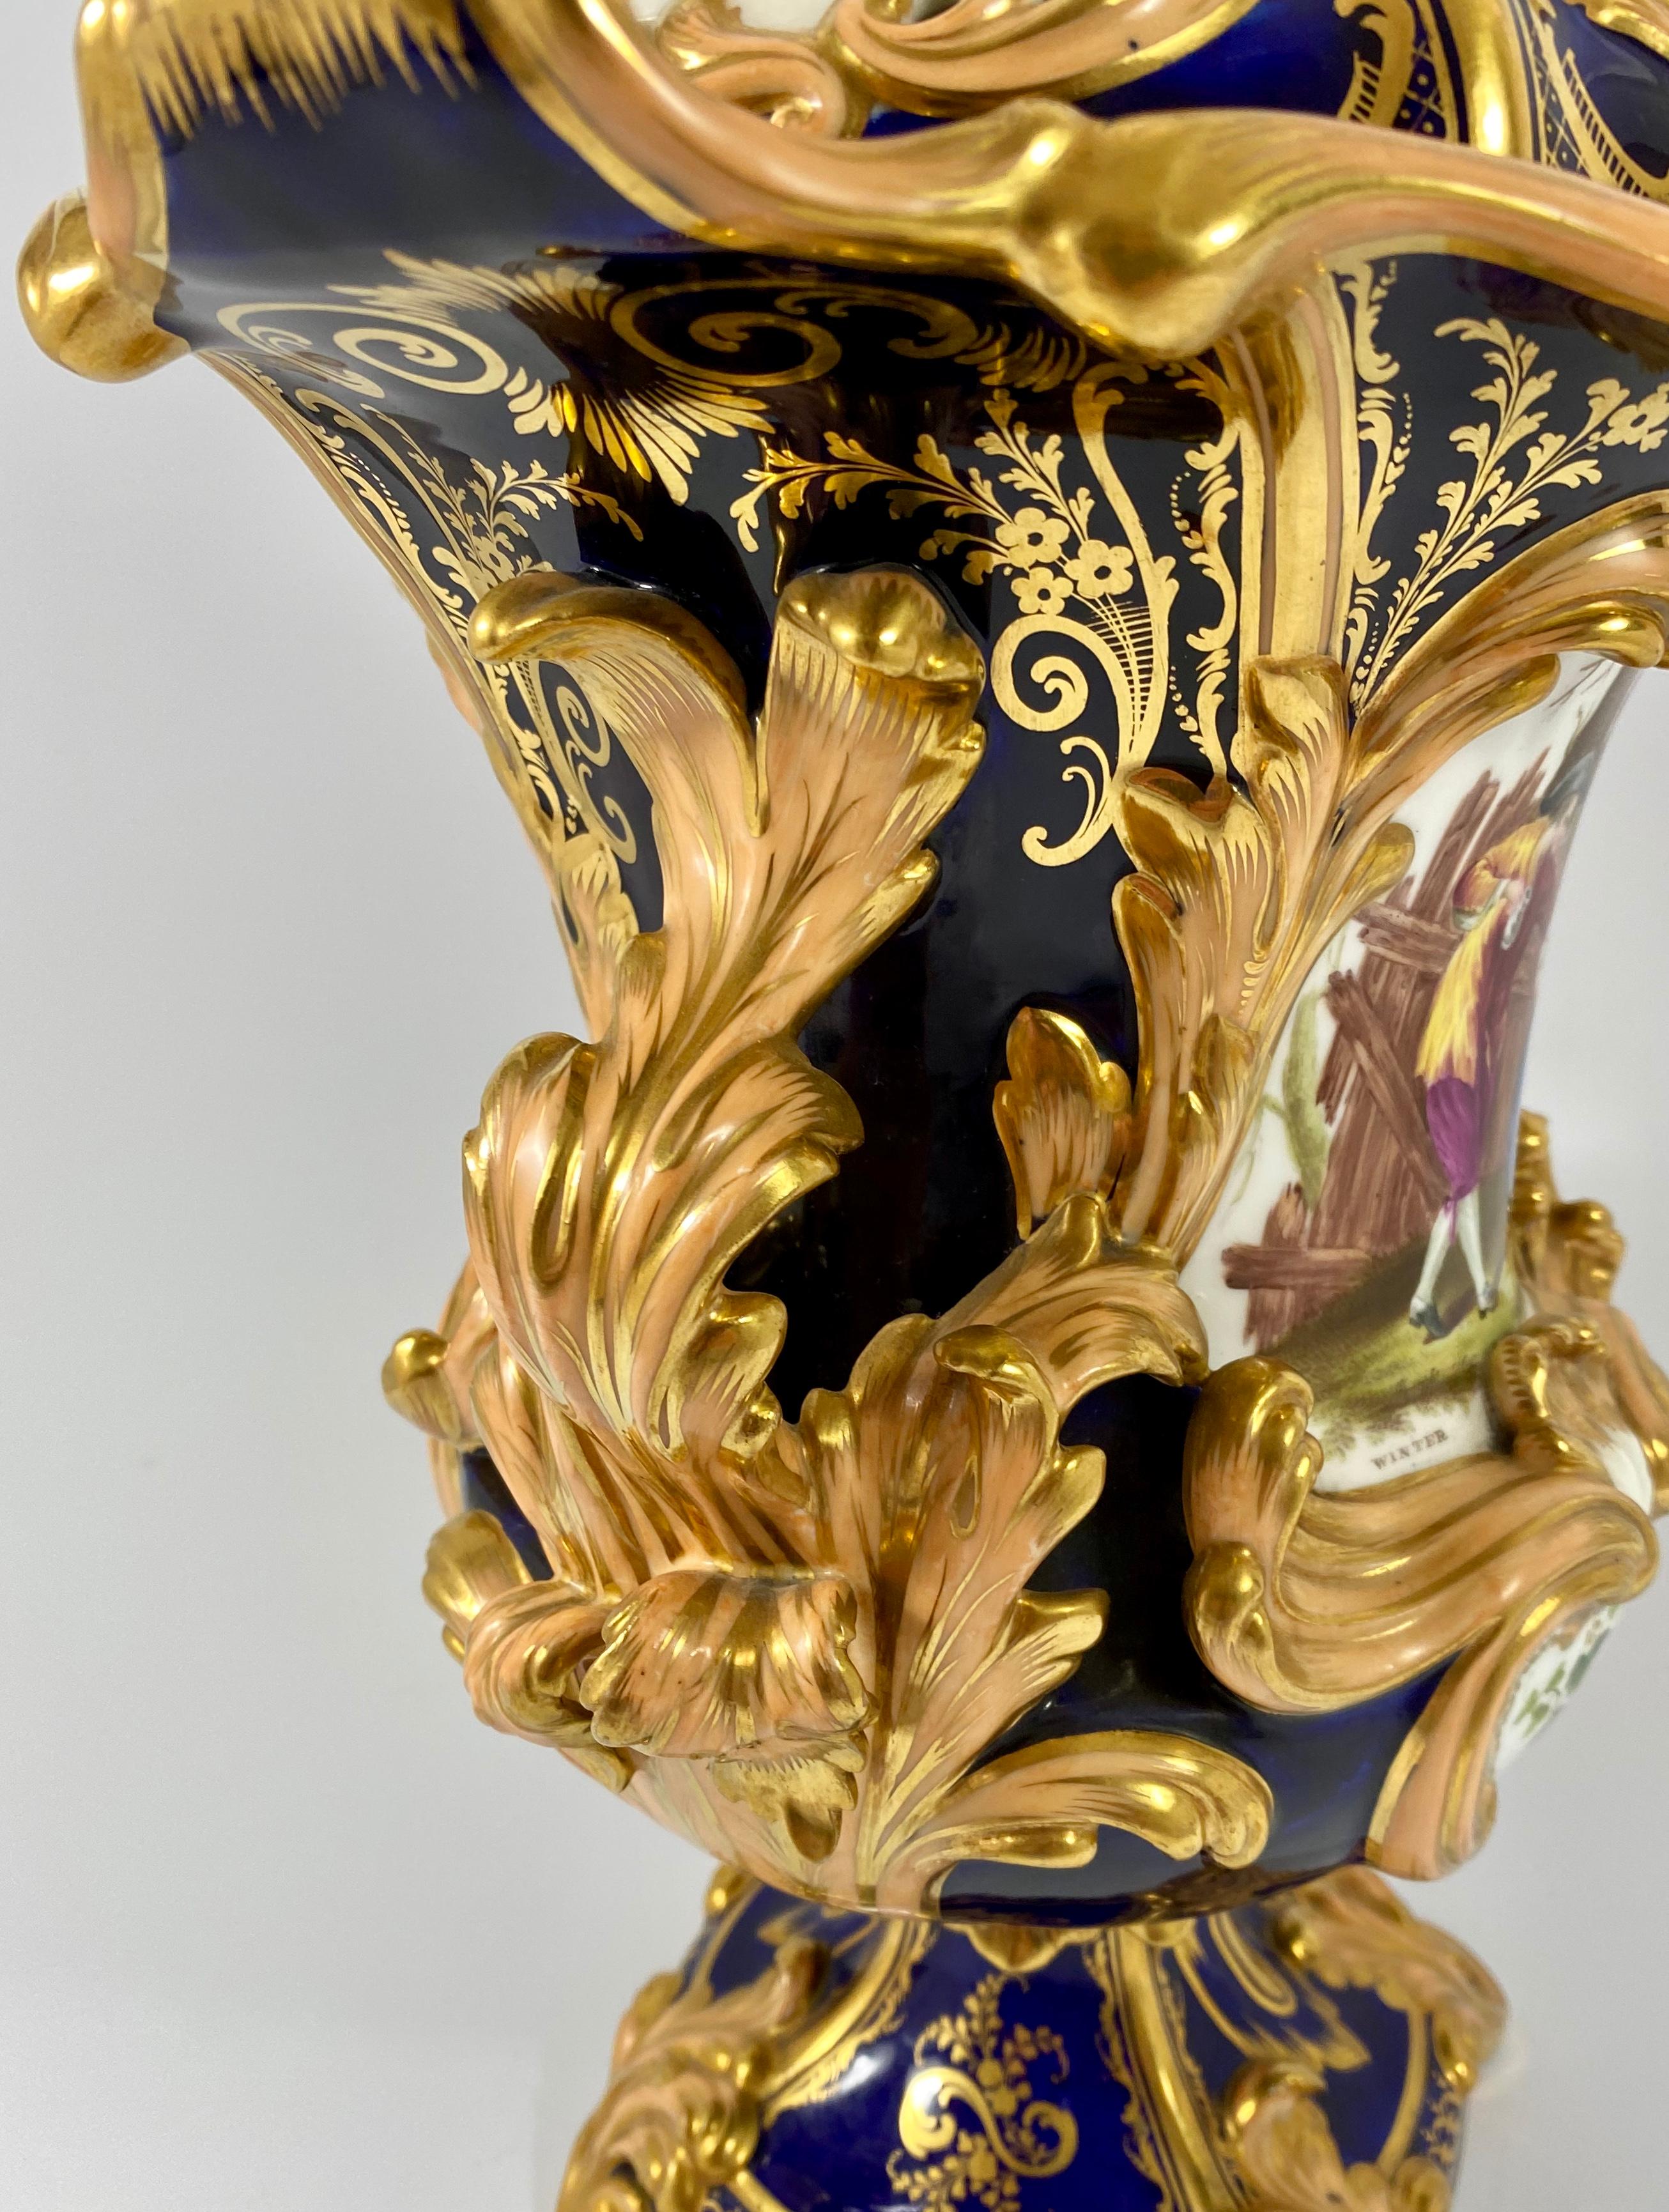 Fine pair Minton porcelain vases & covers, ‘Four Seasons’ c. 1830. 1